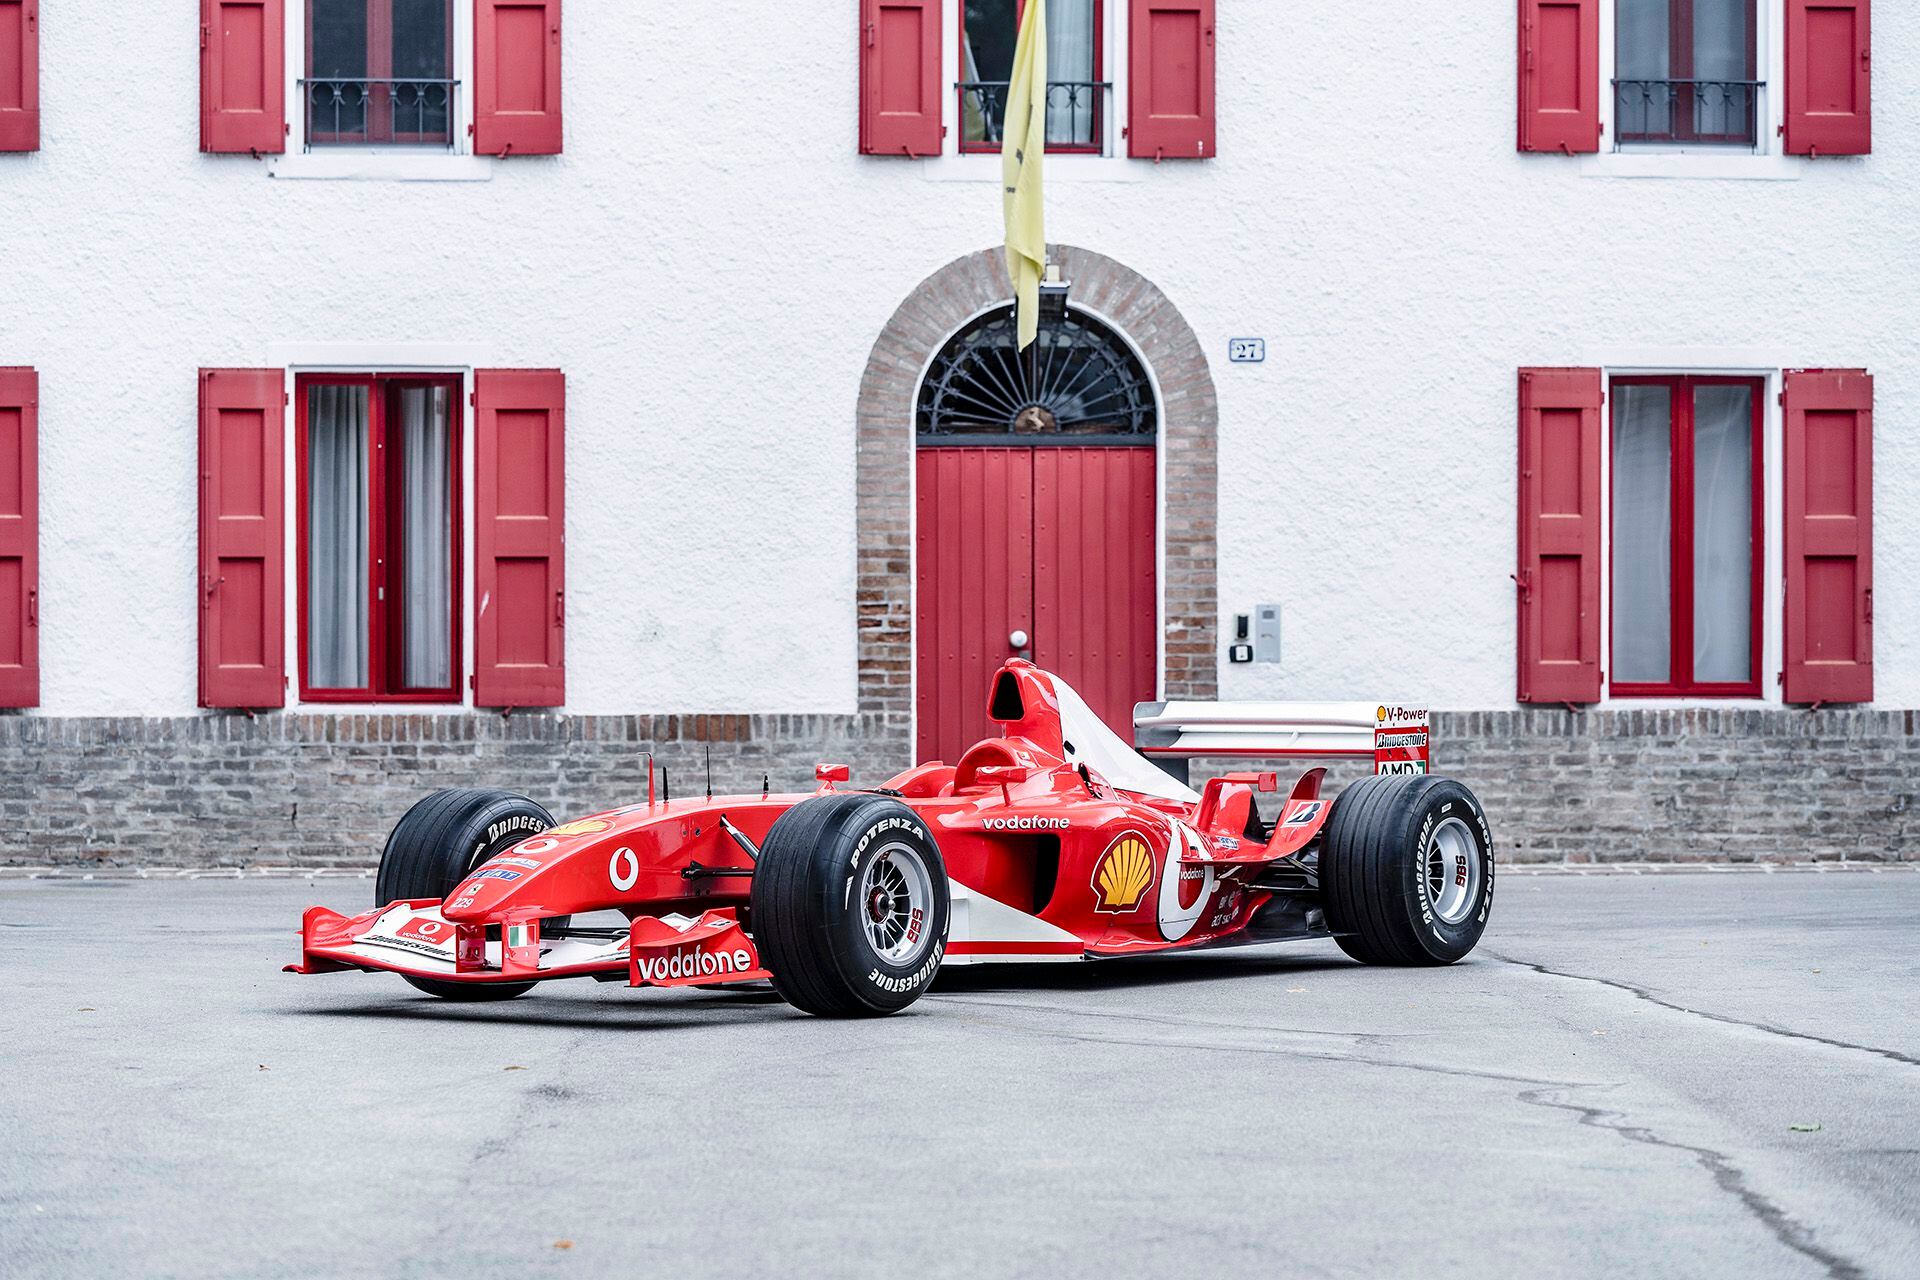 Schumacher Ferrari 2003